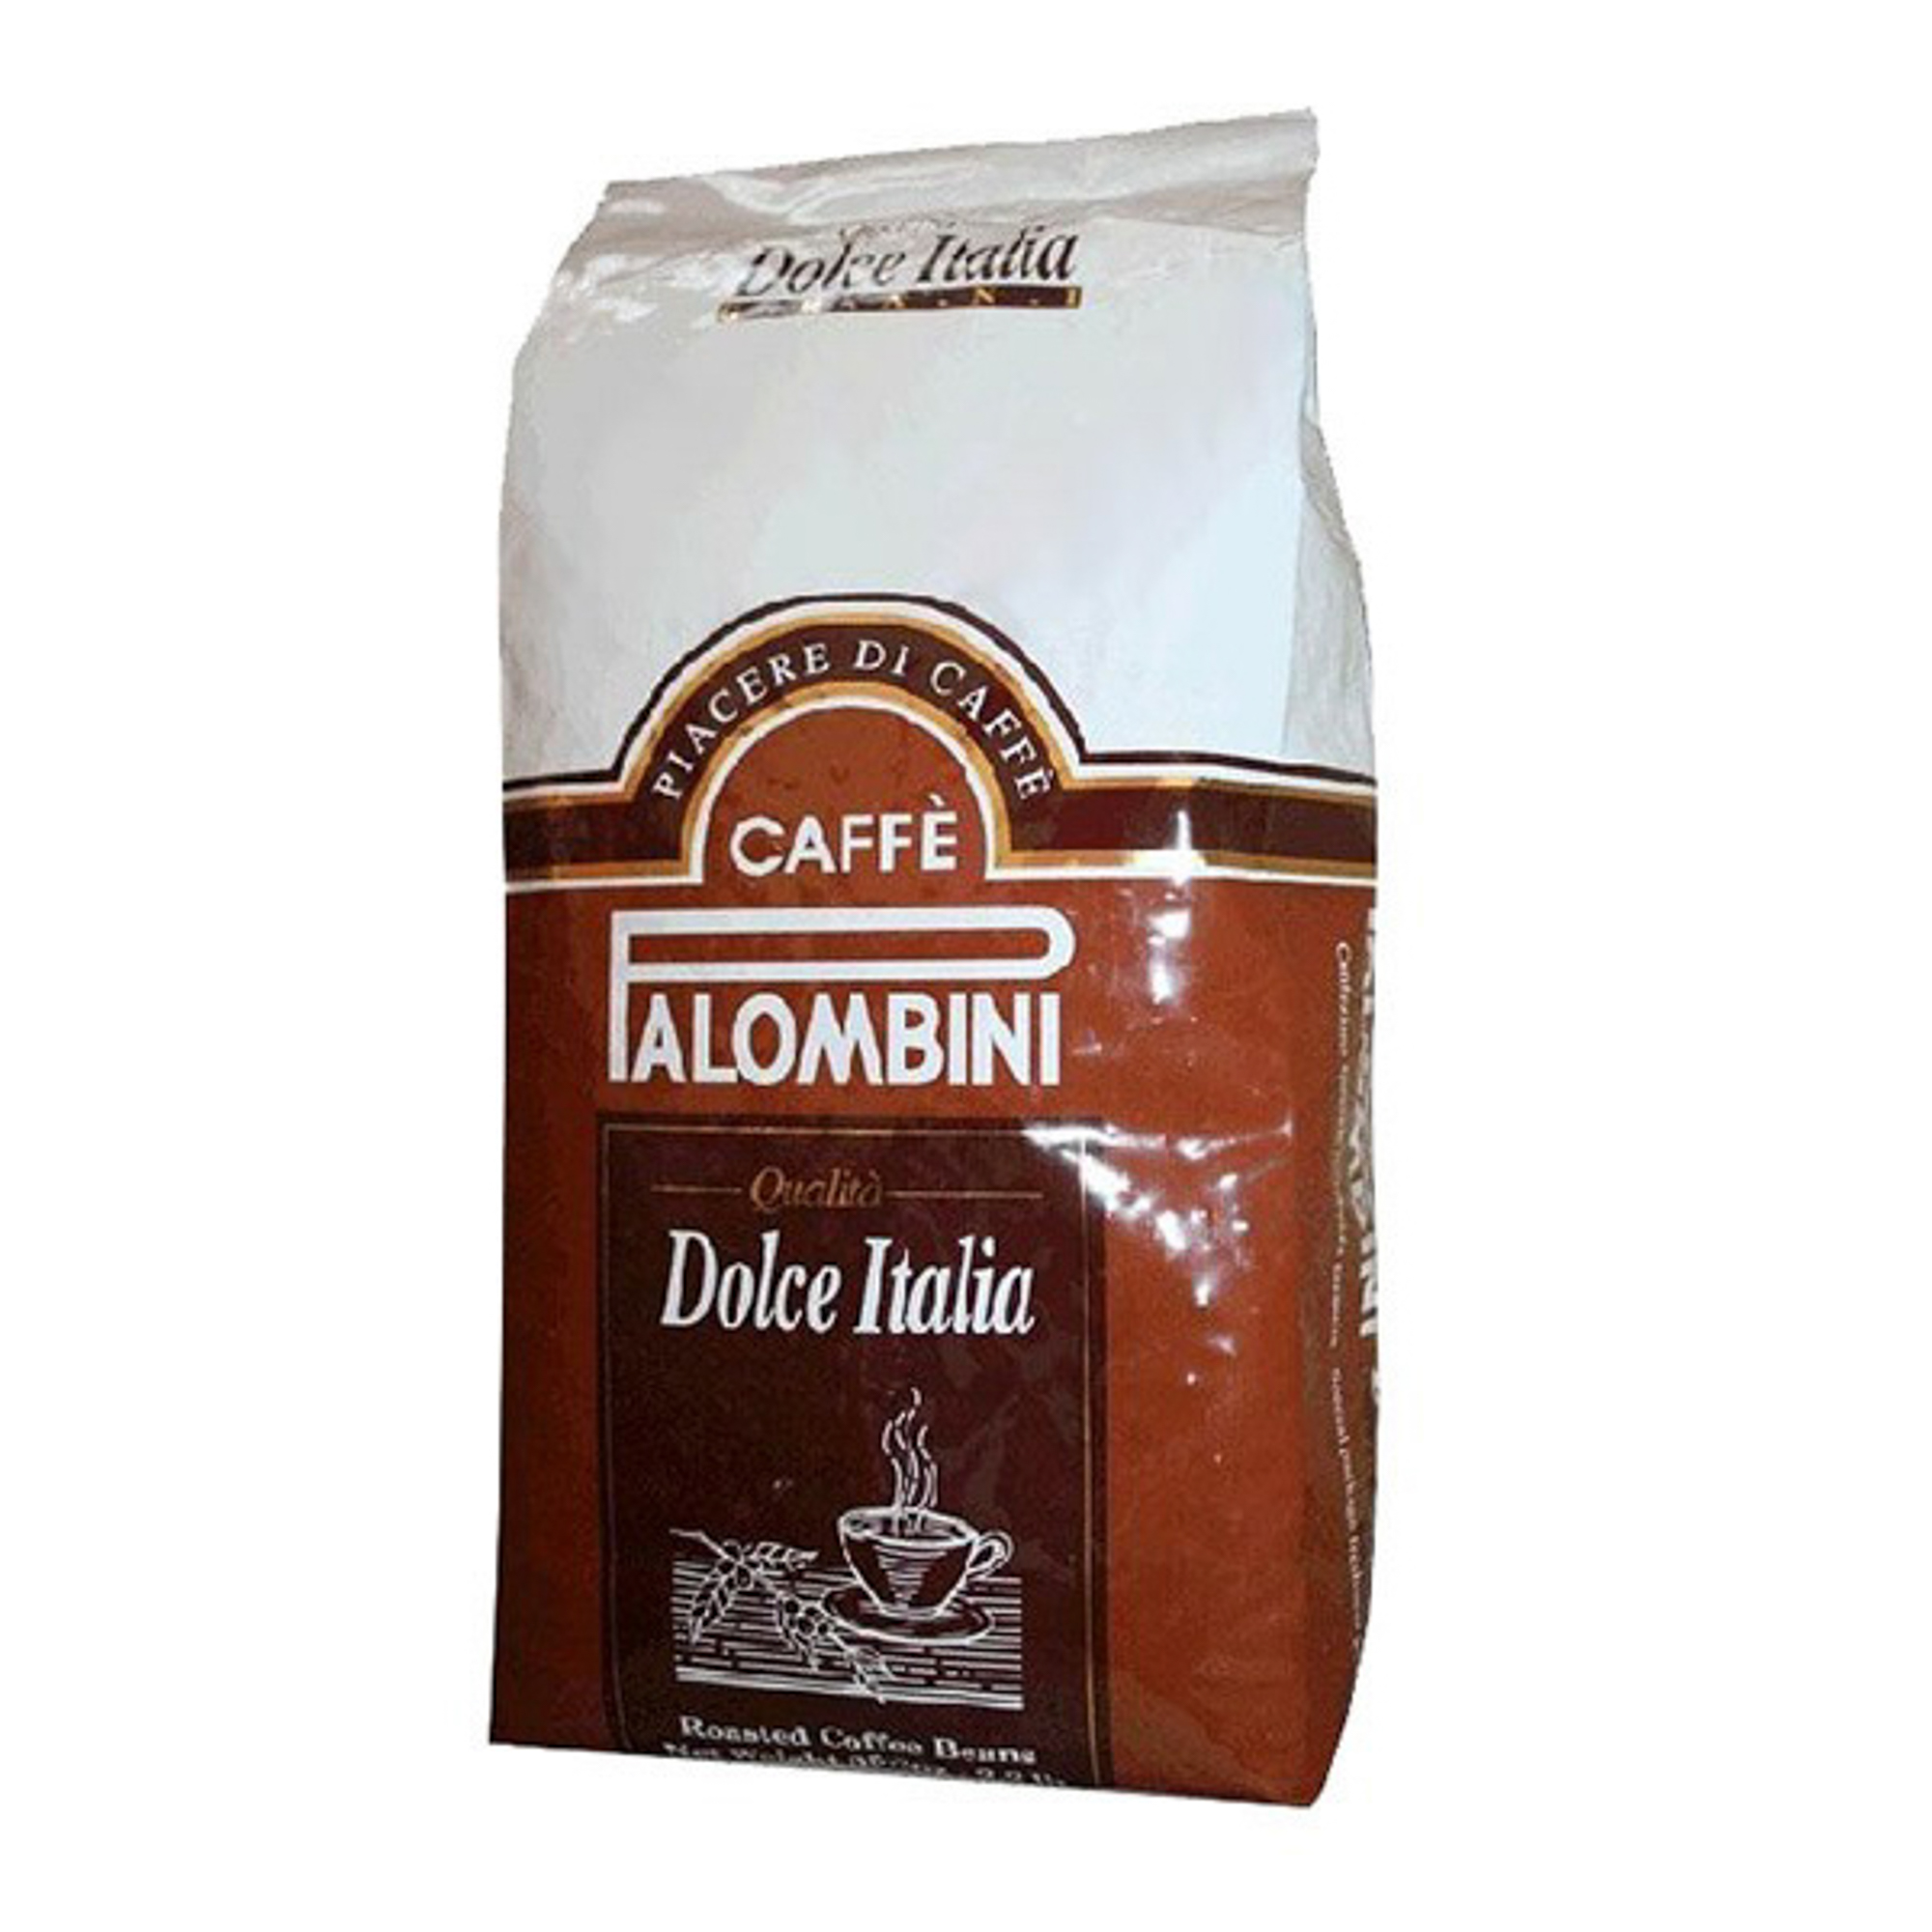 кофе в зернах palombini gold 1 кг Кофе в зернах Palombini Dolce Italia 1 кг